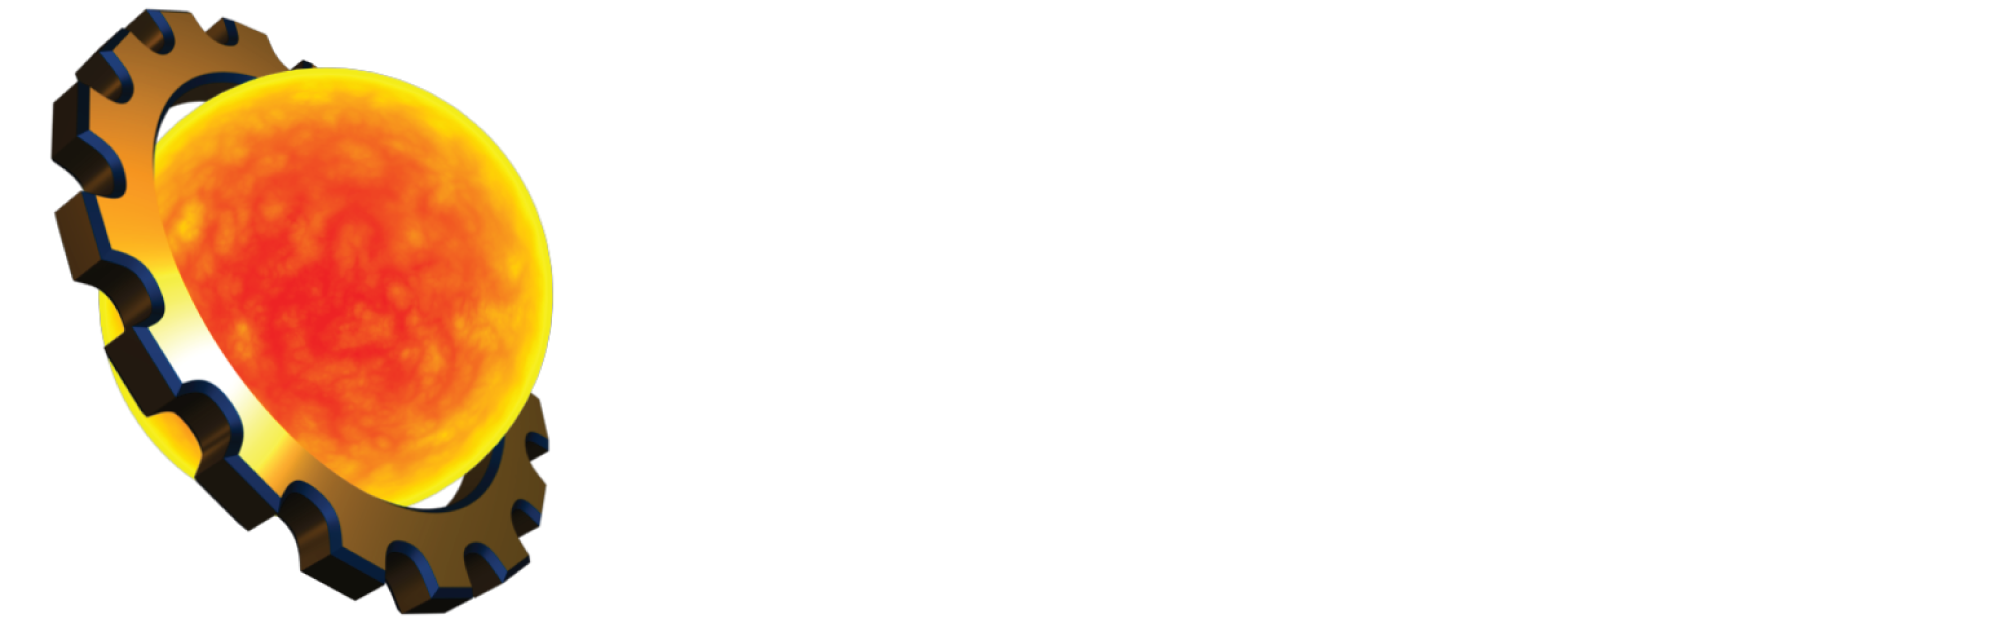 NeoGeo New Media GmbH